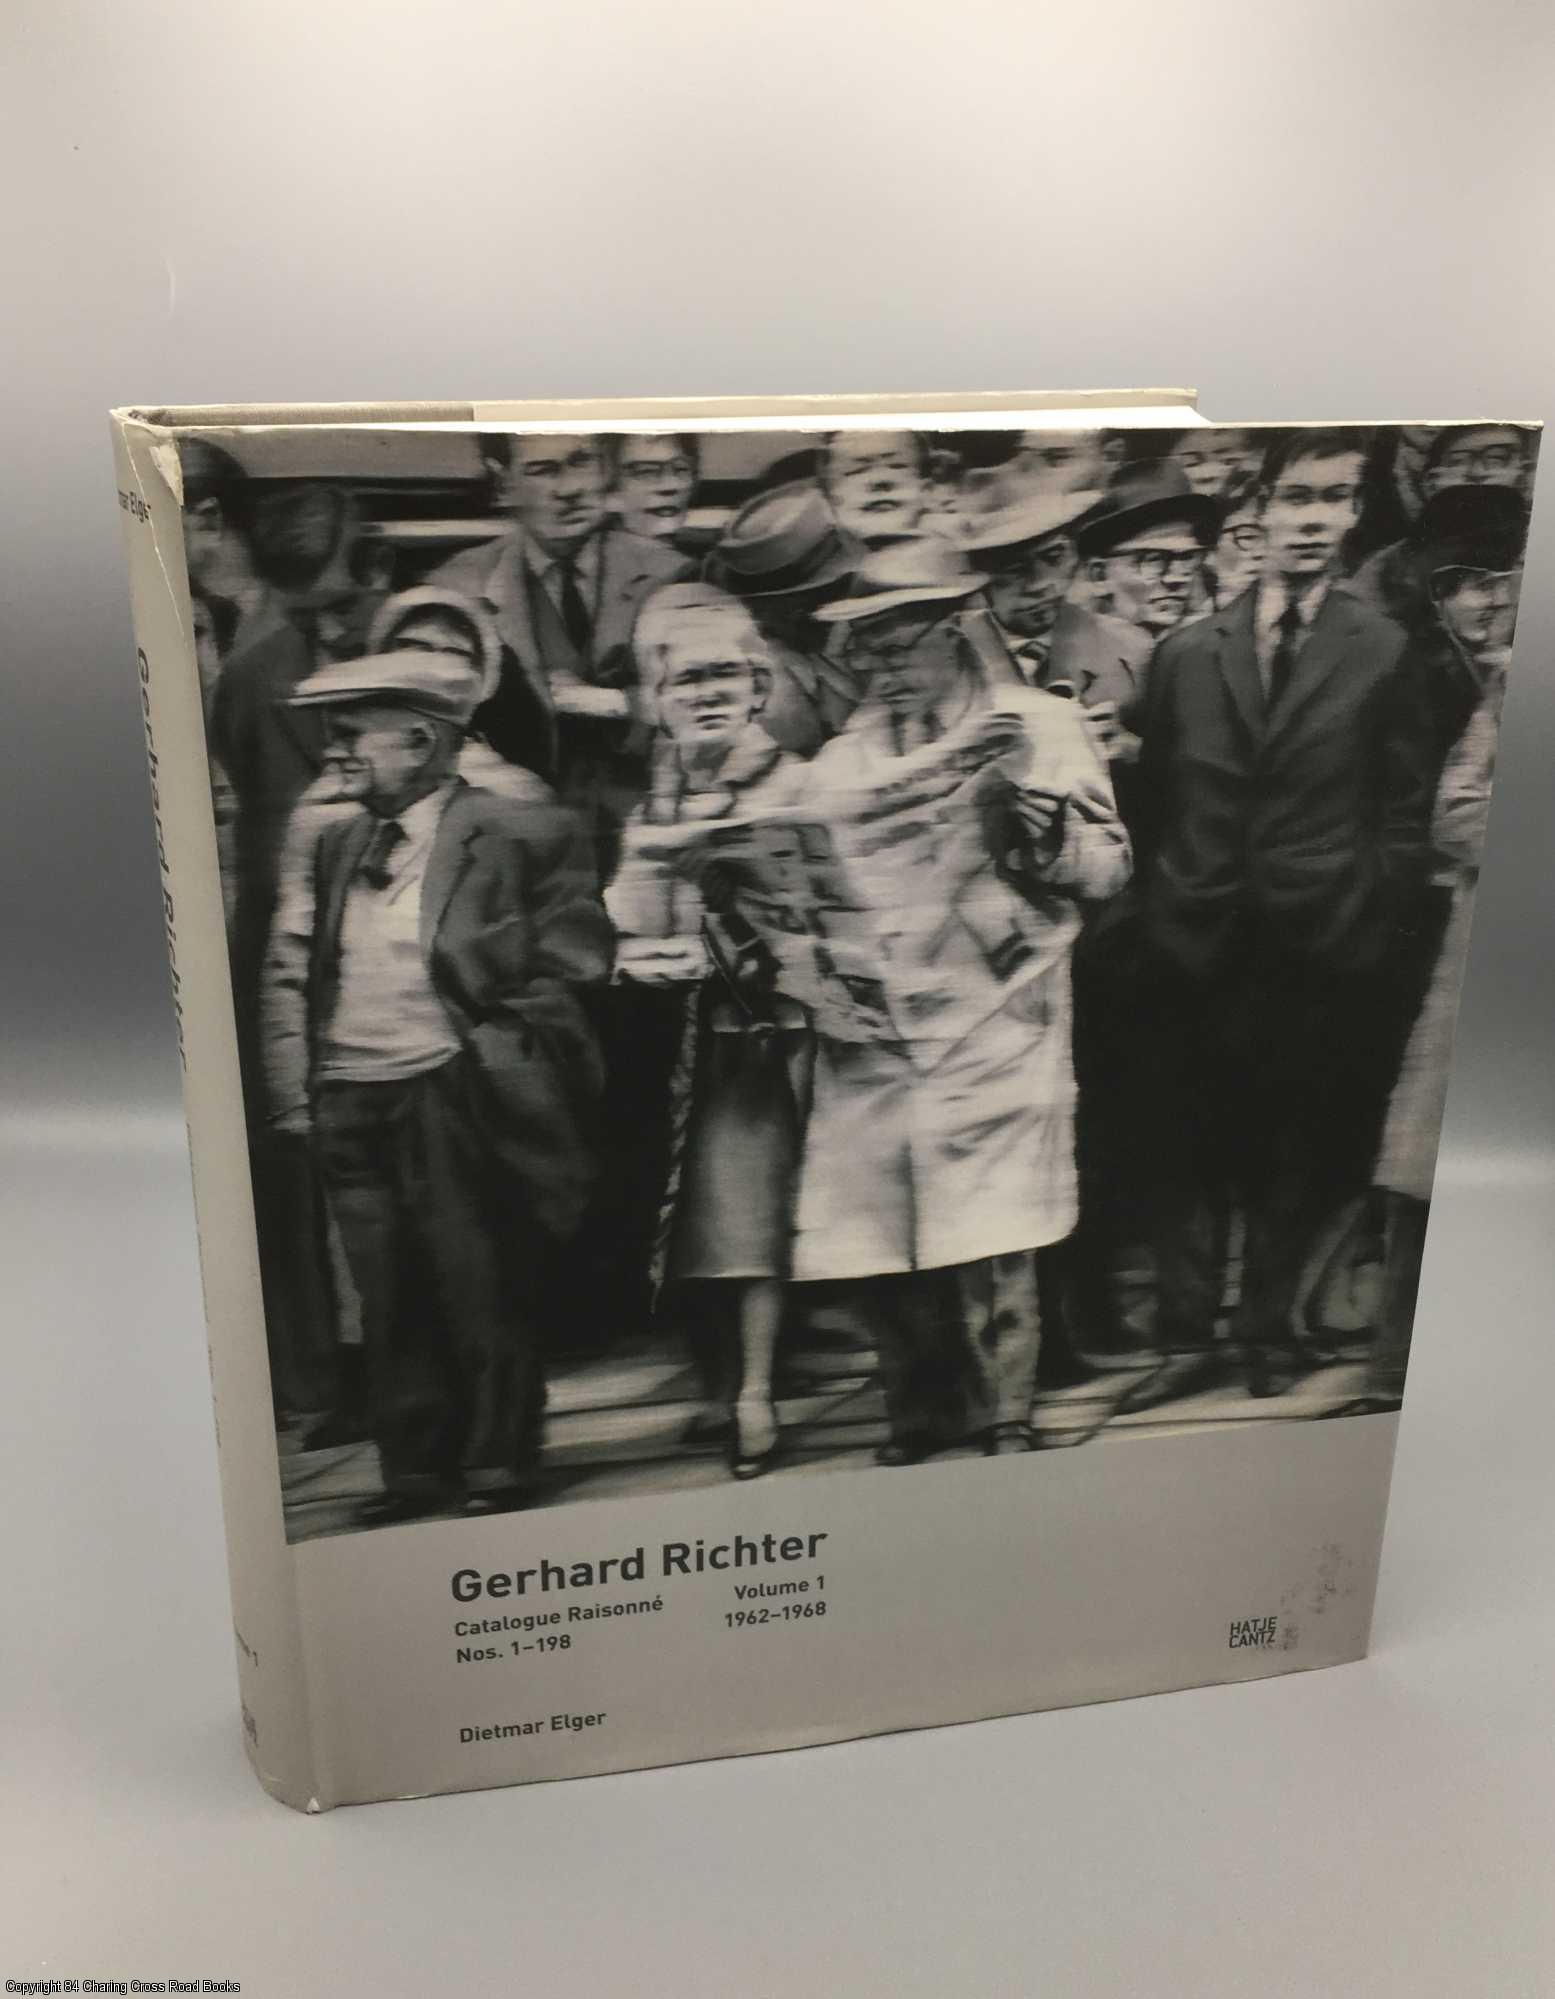 Gerhard Richter: Catalogue Raisonne Nos. 1-198 Vol 1 1962-68 by Dietmar  Elger, Gerhard Richter on 84 Charing Cross Rare Books